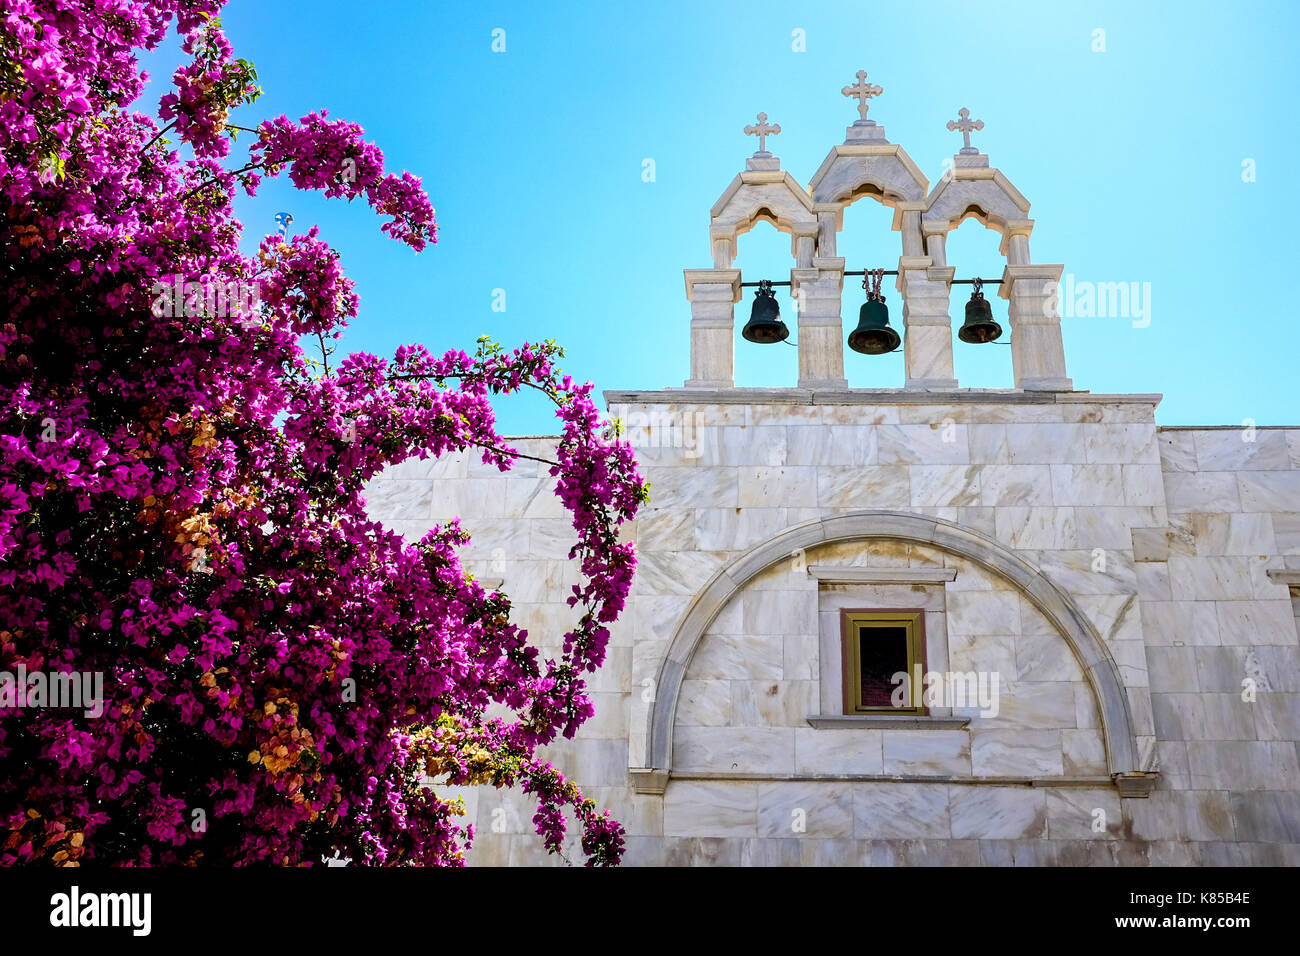 Il monastero di Panagia Tourliani a Mykonos, Grecia. Persone accendono le candele per morti cari, interni e vedute esterne del monastero Bibbie. Foto Stock